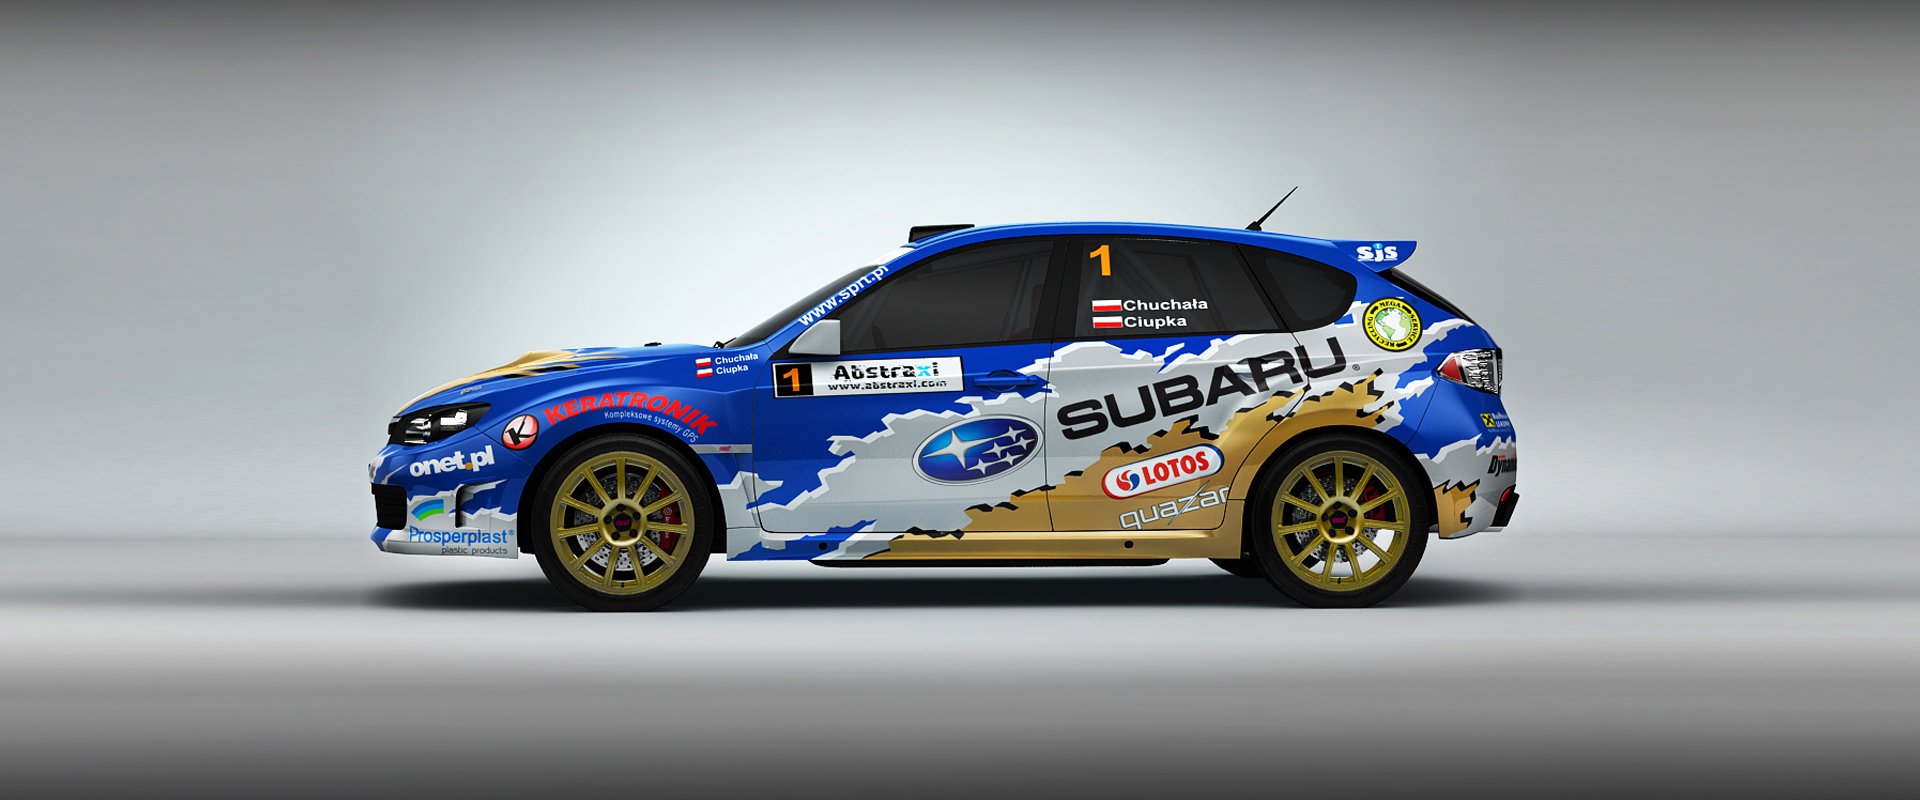 Subaru Poland Rally Team #2